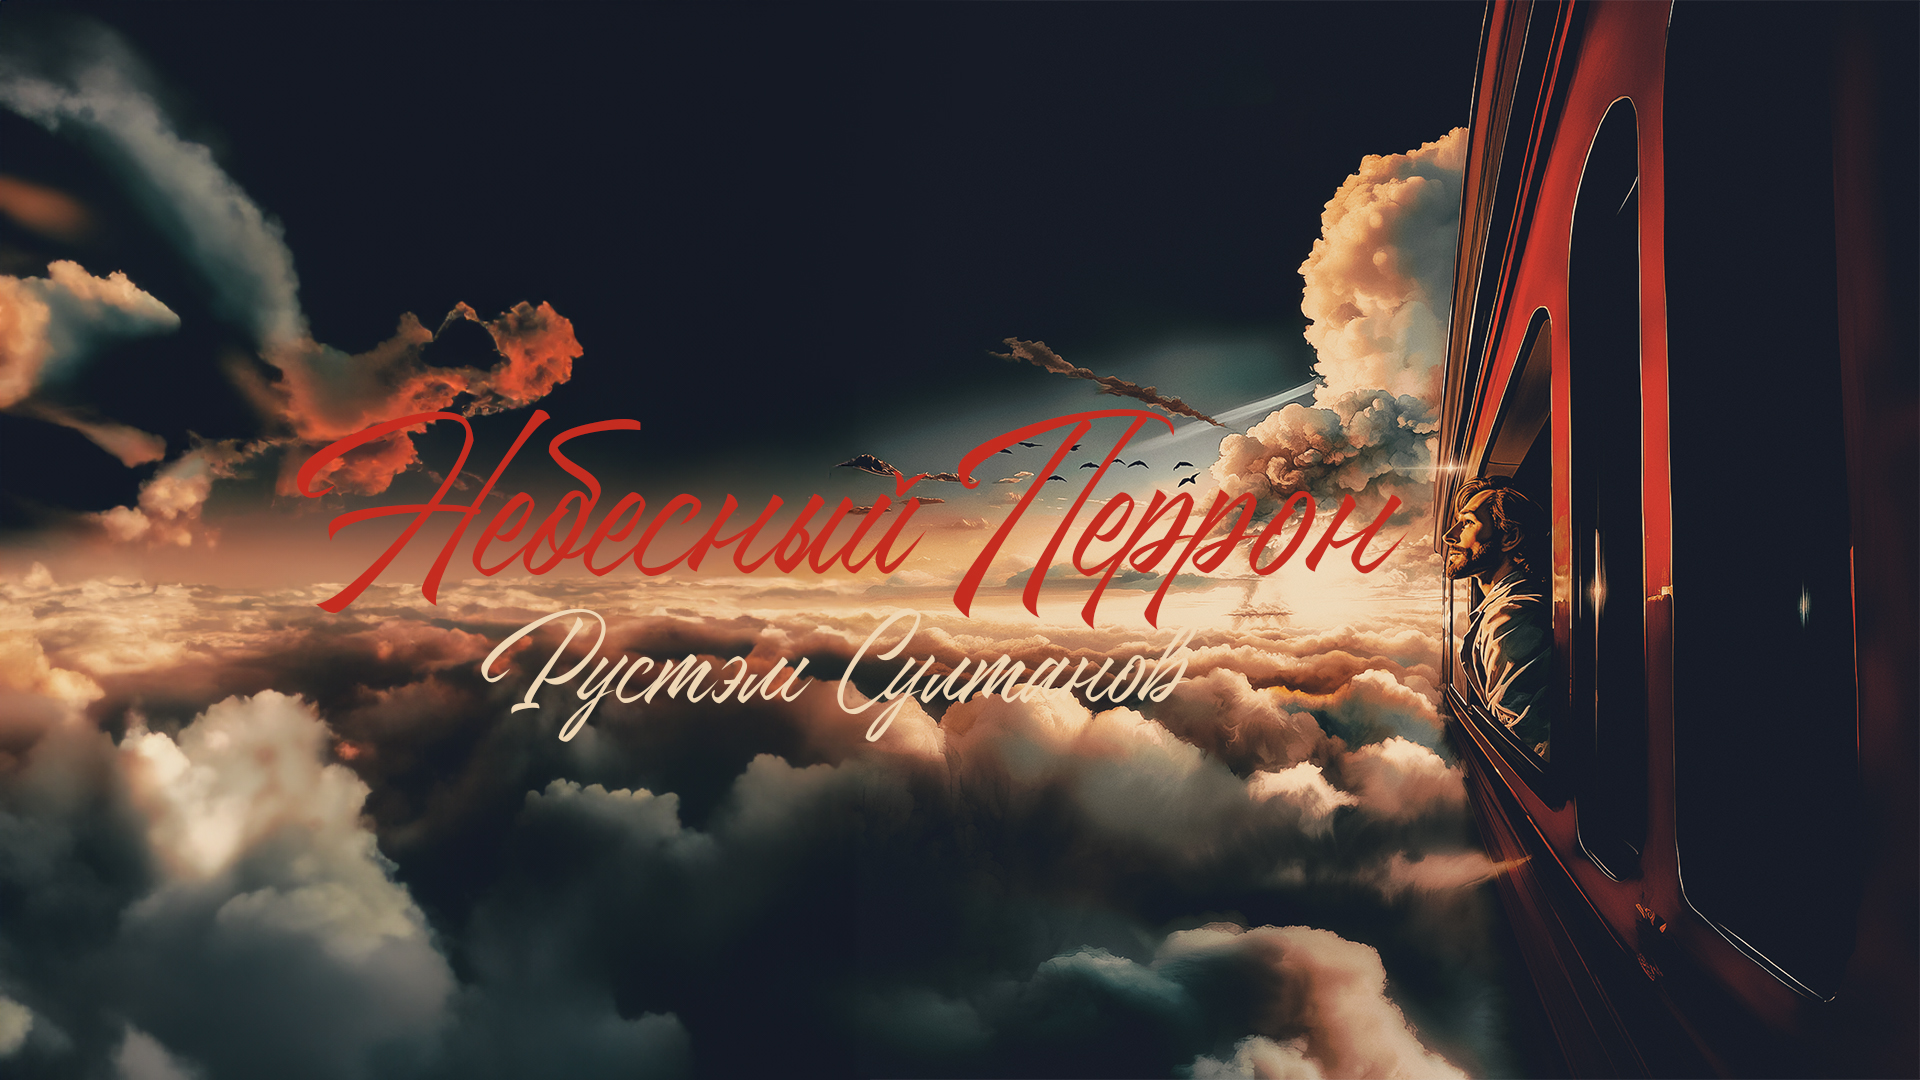 Рустэм Султанов посвятил «Небесный перрон» памяти Игоря Талькова и Андрея Сапунова - фото 1